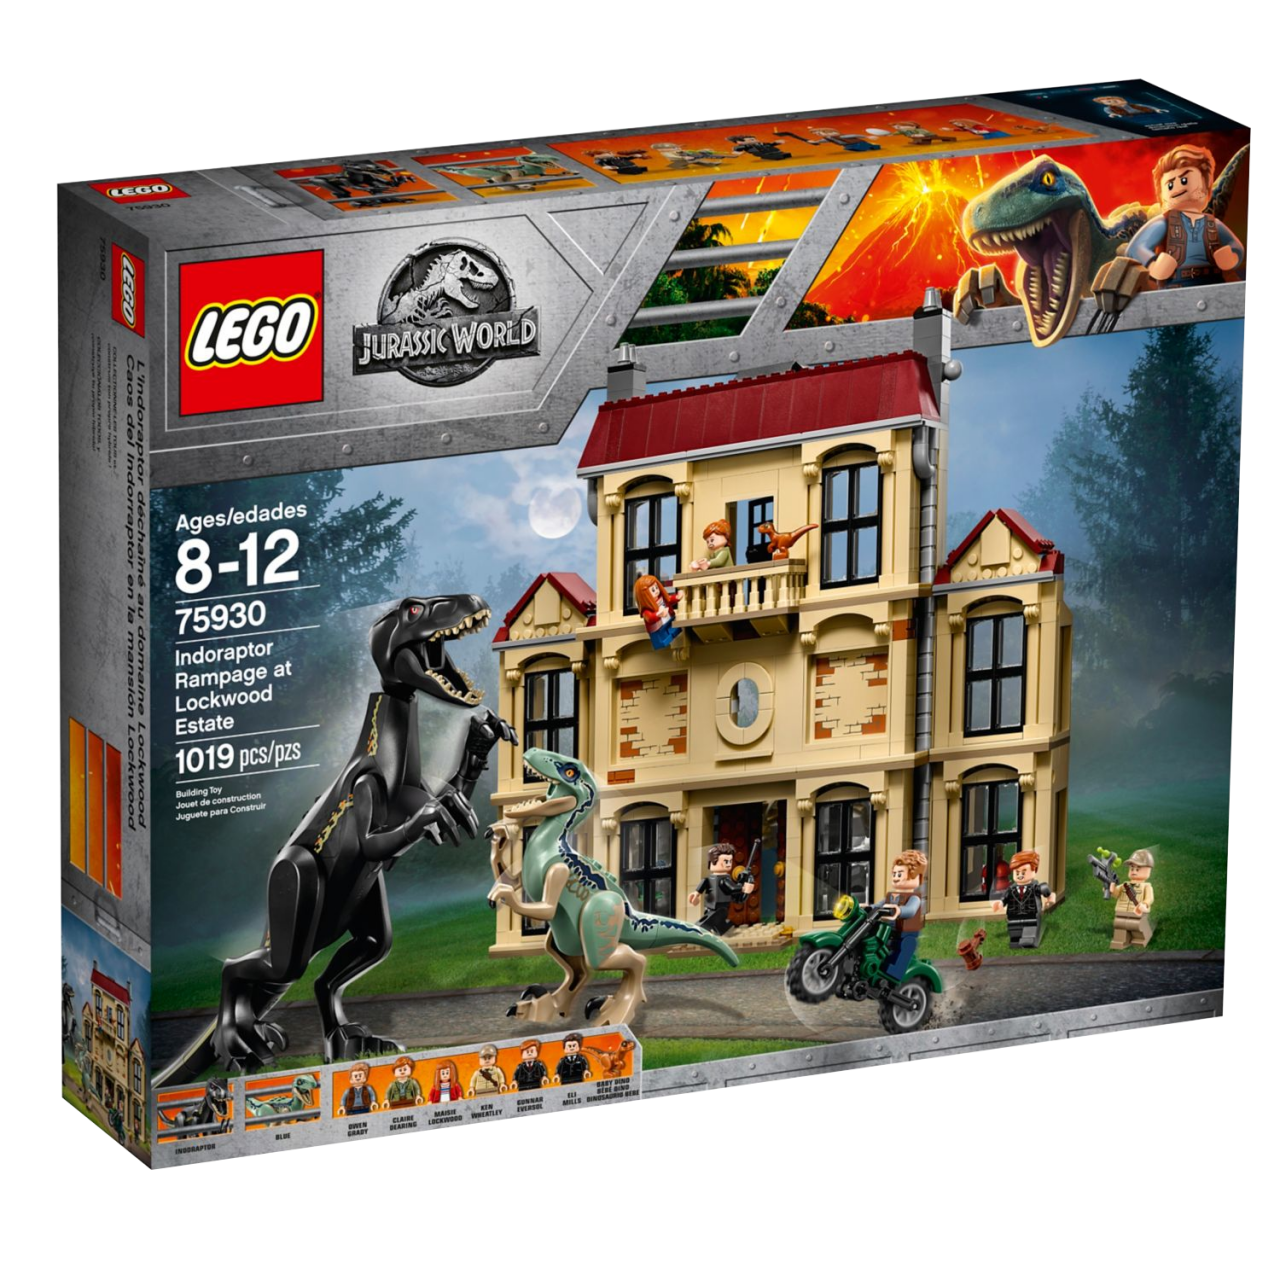 LEGO JURASSIC WORLD 75930 Indoraptor-Verwüstung des Lockwood Anwesens